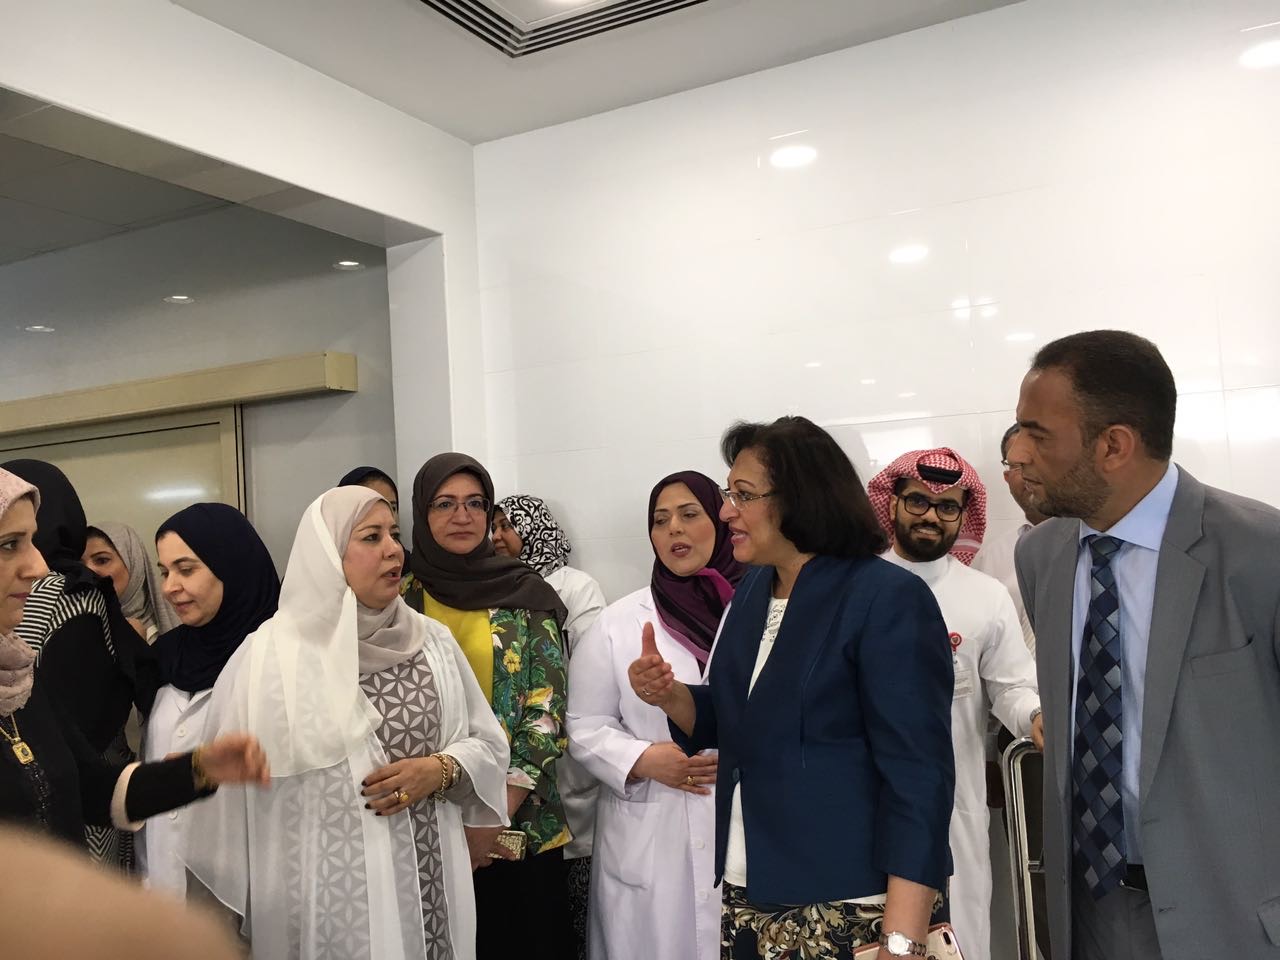 سعادة وزيرة الصحة تفتتح قسم العلاج الطبيعي بمركز حمد كانو الصحي